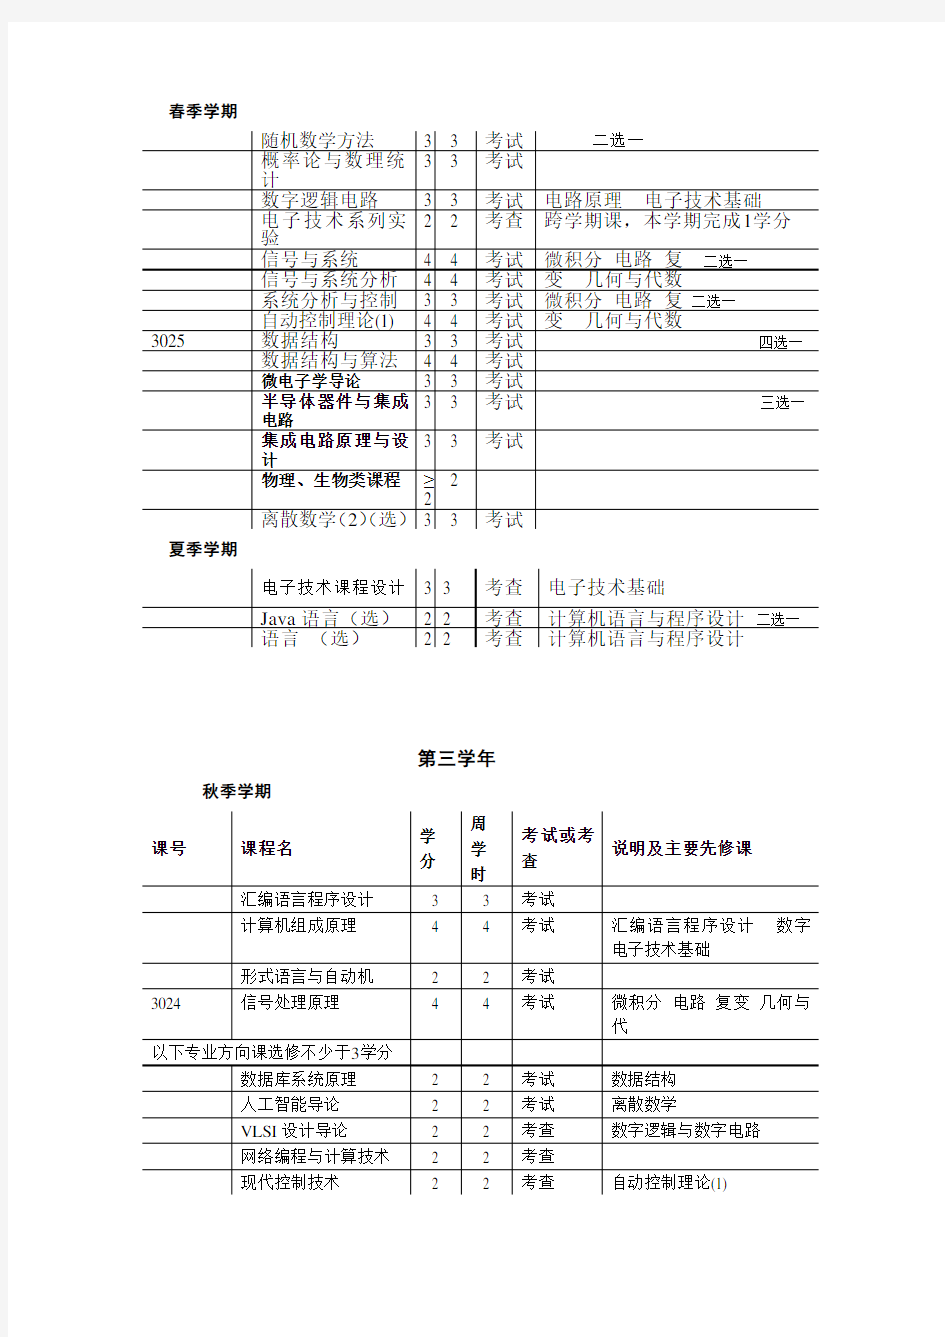 (完整word版)清华大学计算机科学与技术专业课程表